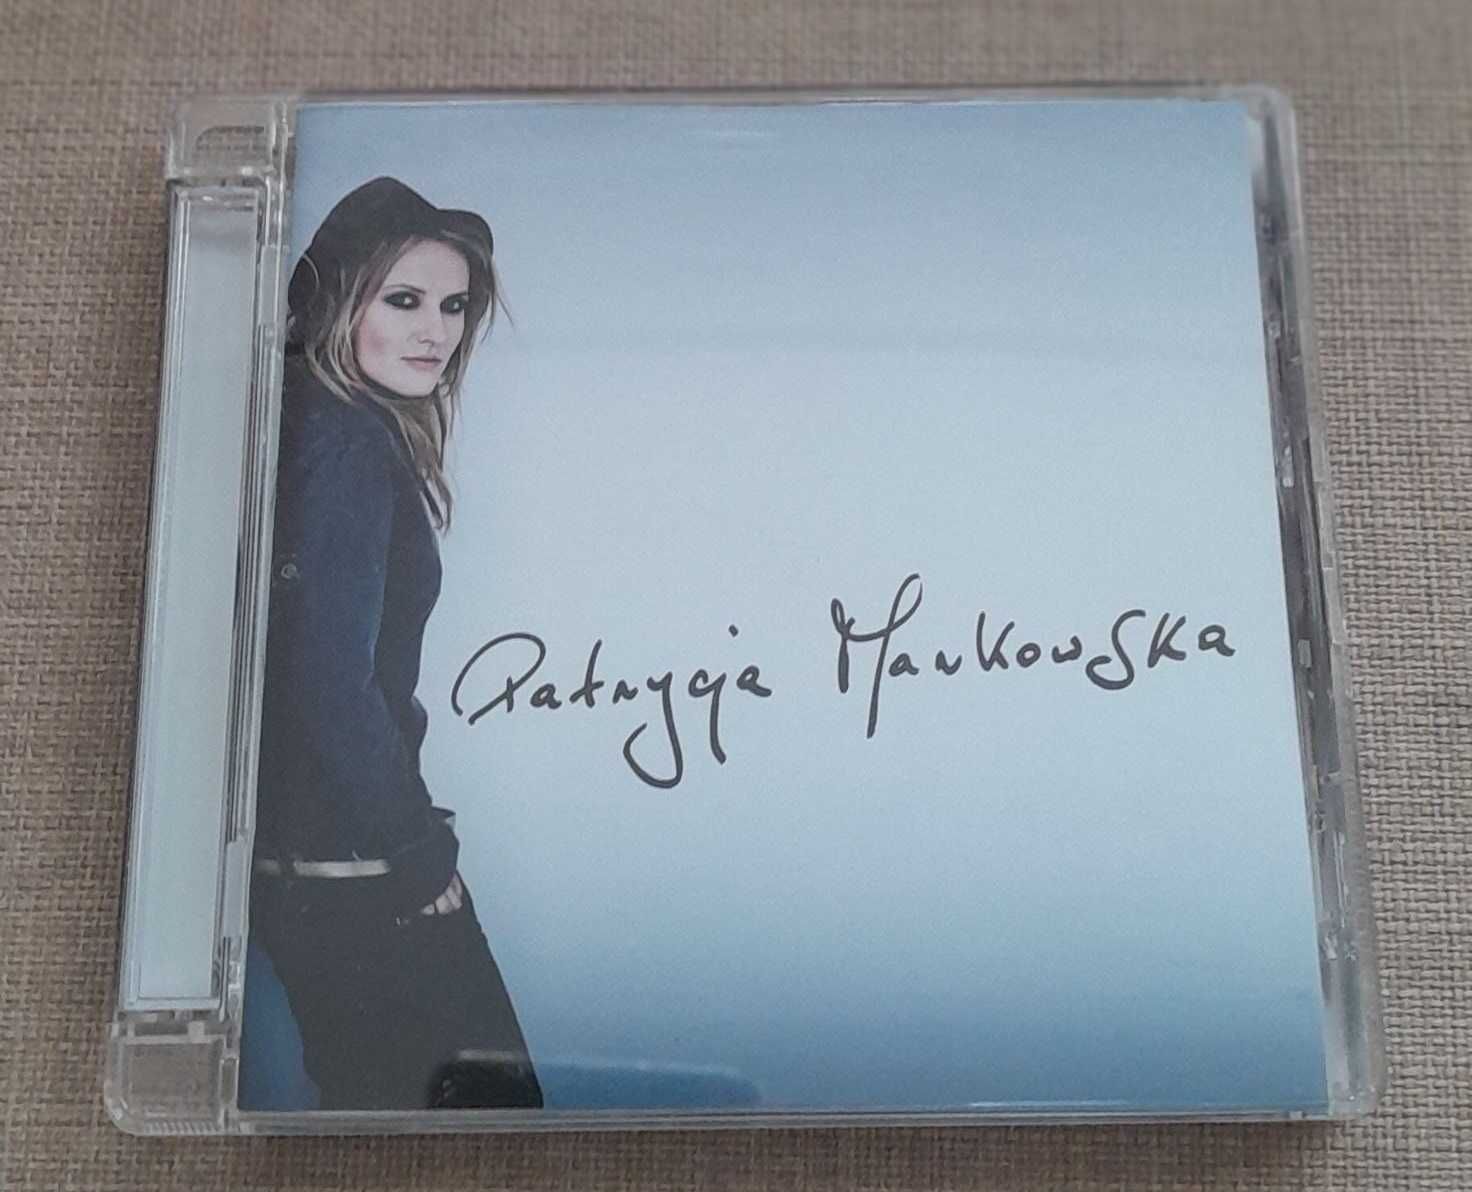 Album Patrycji Markowskiej z 2010 r. - płyta CD